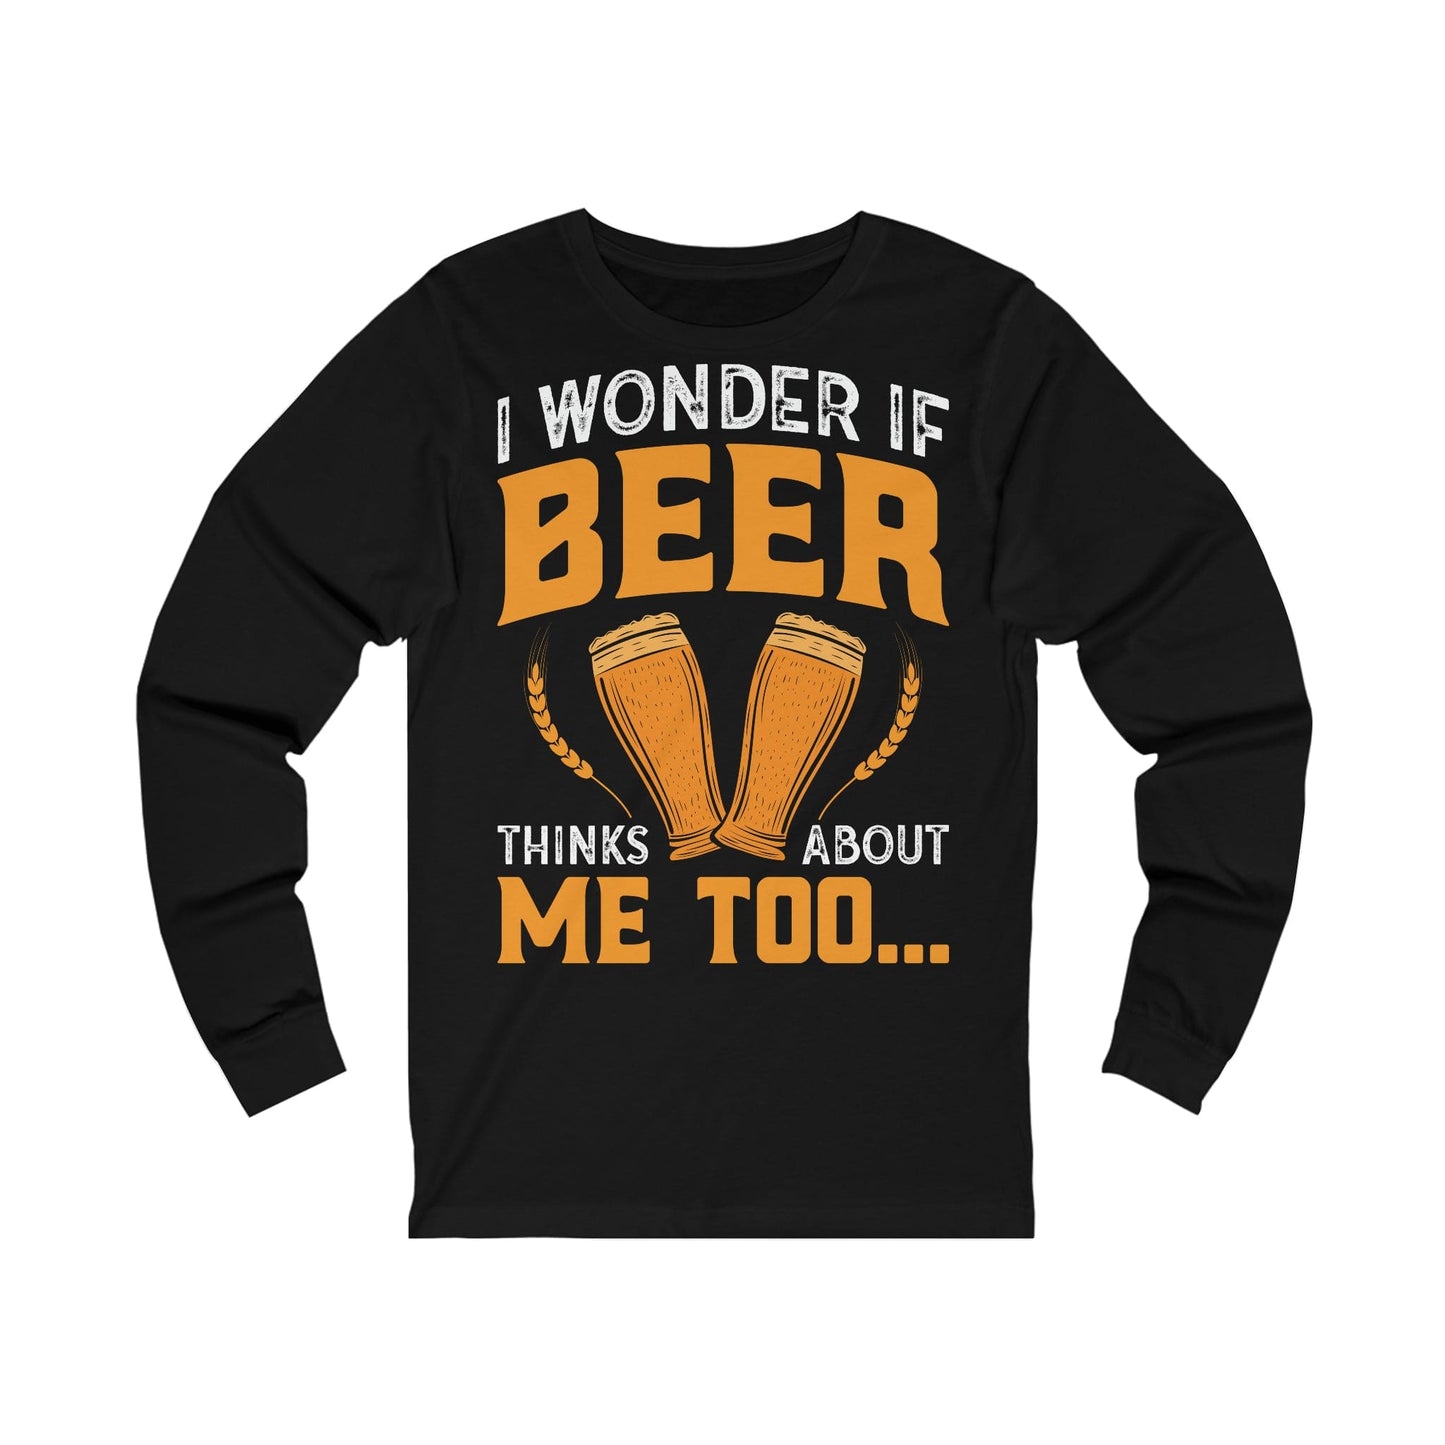 Denkt Beer auch an mich-Langarm-T-Shirt